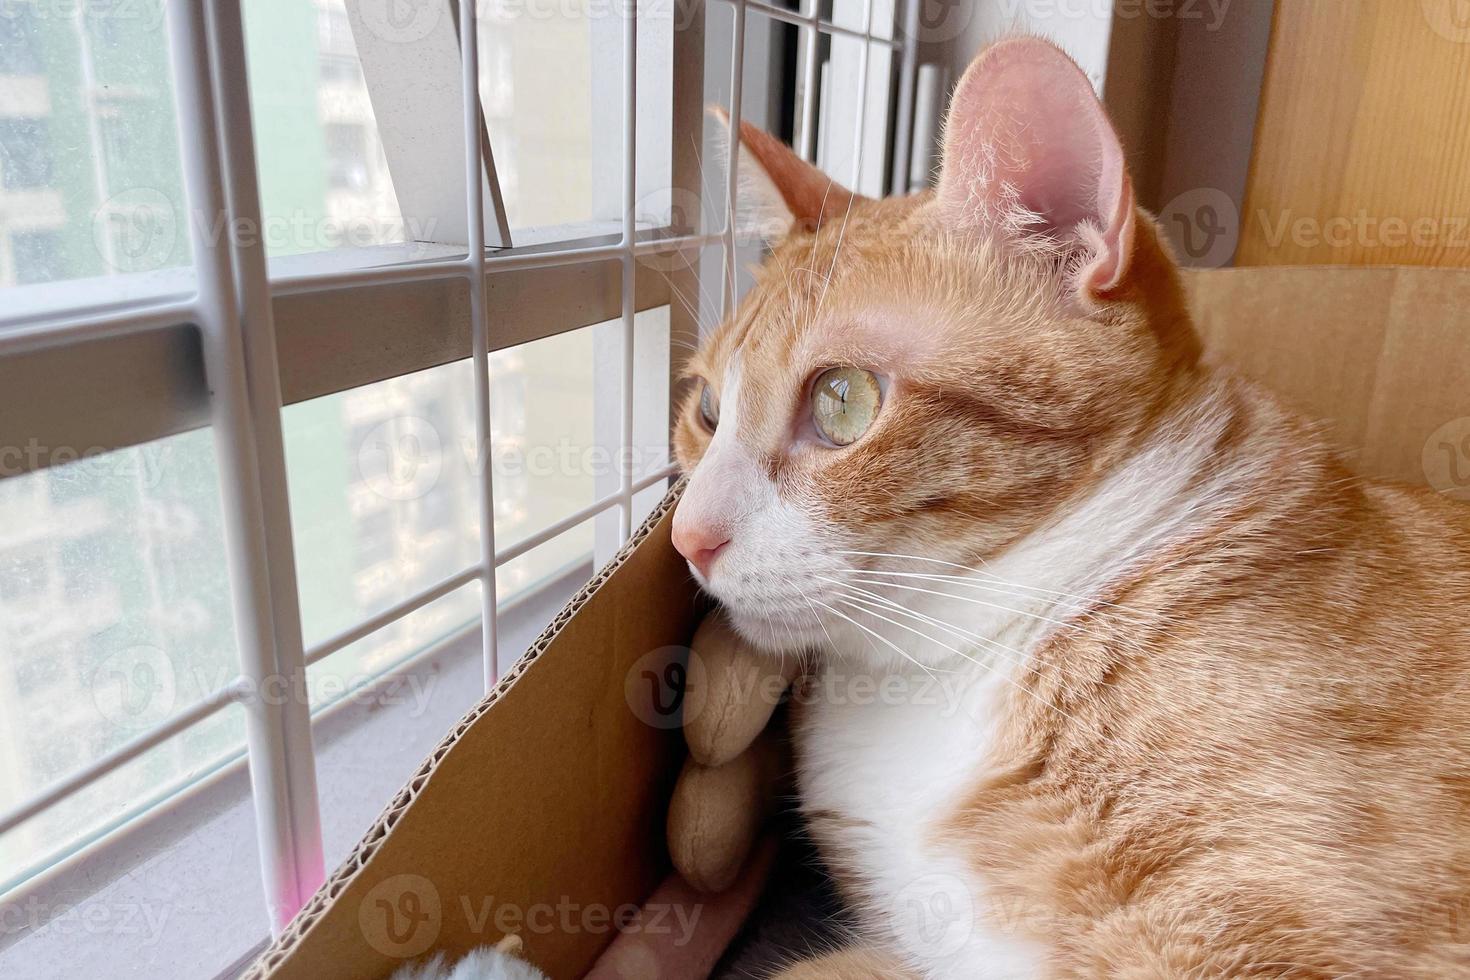 Die kleine orange getigerte Katze sieht, dass sich vor dem Fenster eine riesige Welt befindet. hochwertiges Foto einer getigerten Katze. Katze im Haus. Katze schaut aus dem Fenster.